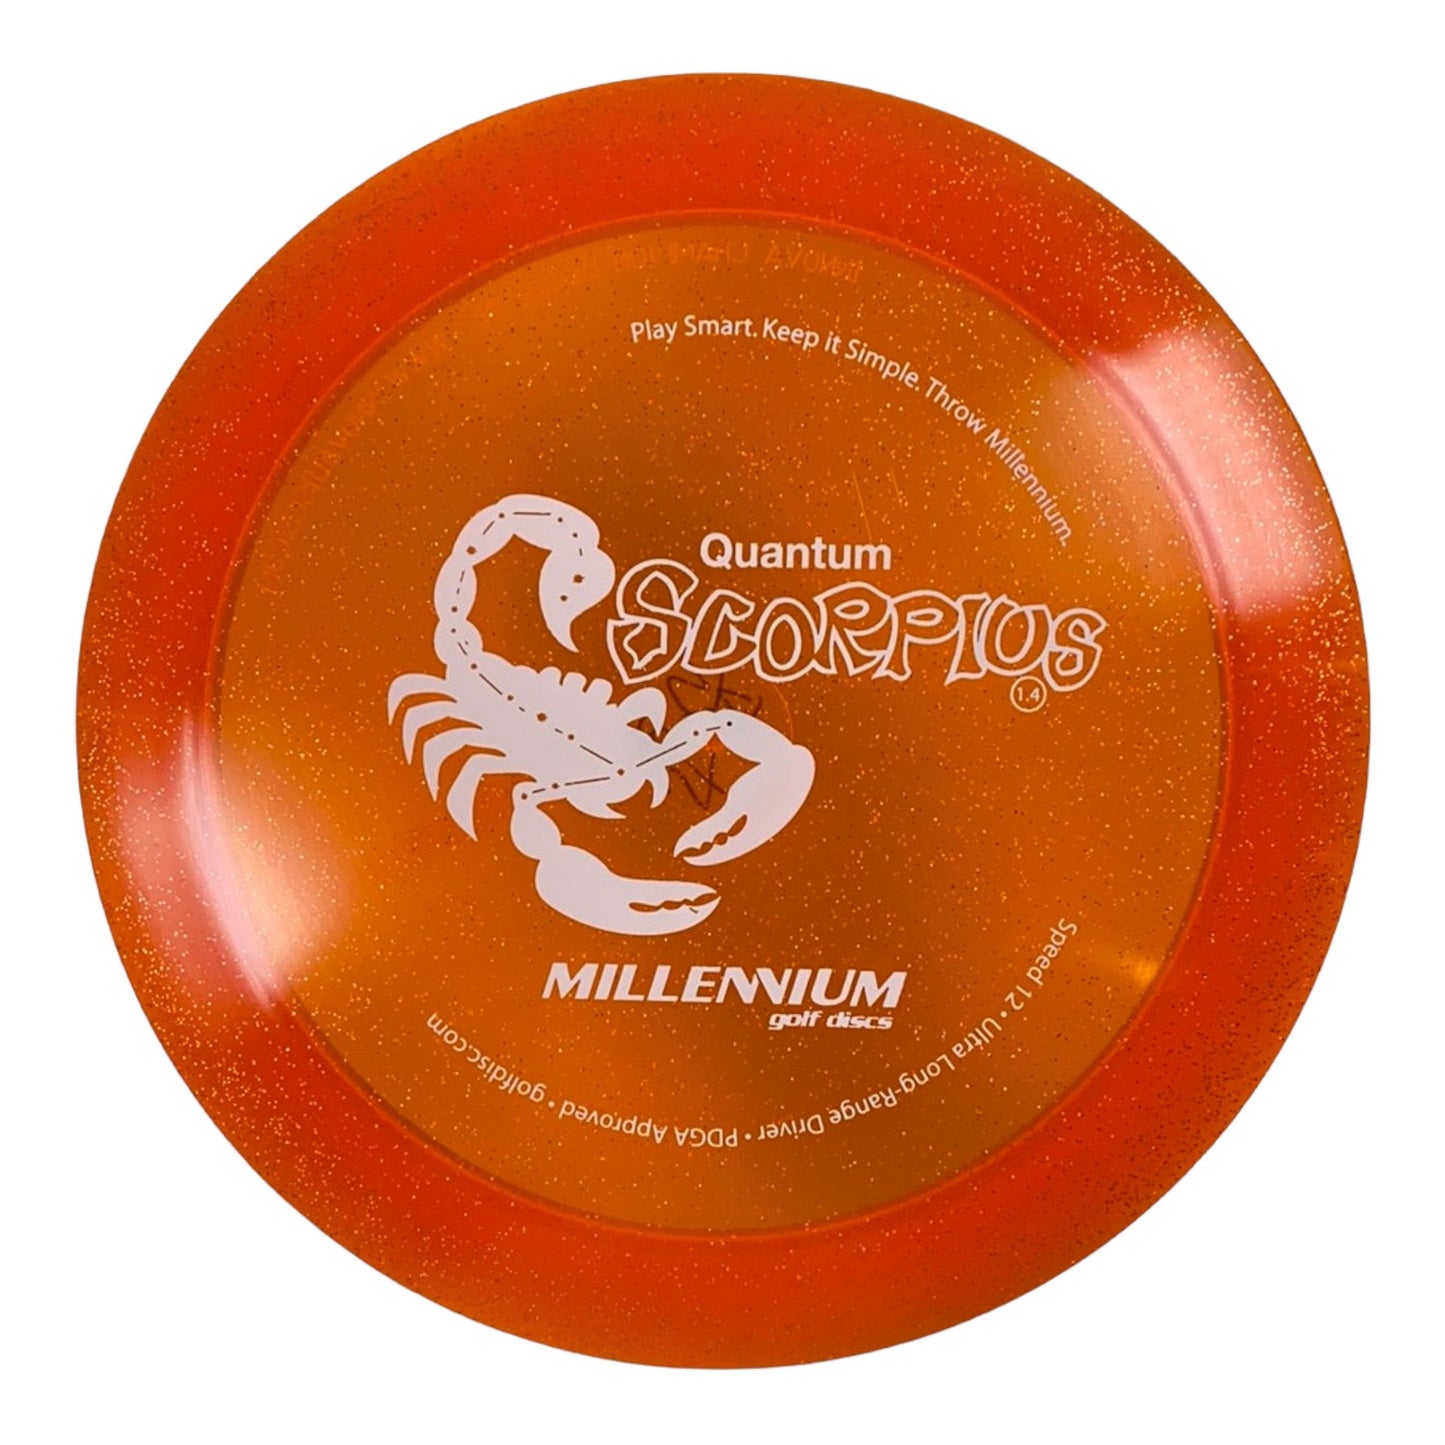 Millennium Golf Discs Scorpius | Quantum Stardust | Orange/White Disc Golf